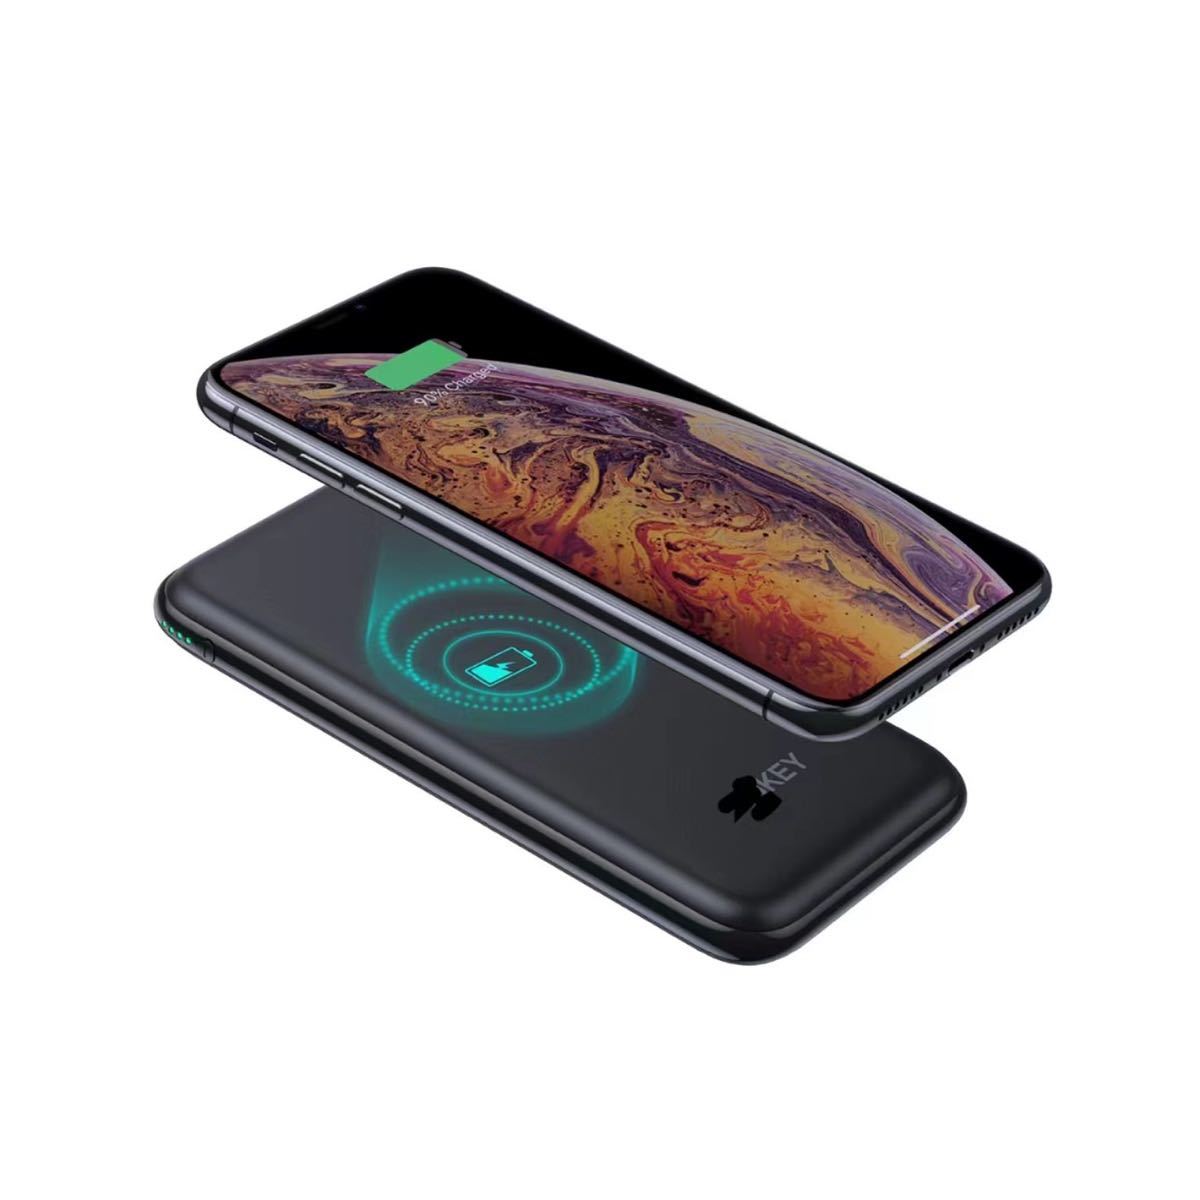 モバイルバッテリー 携帯充電器ブラック黒 iPhone スマホ Android iPad タブレット USBC アウトドア キャンプ スマートフォン バッグに入る_画像2